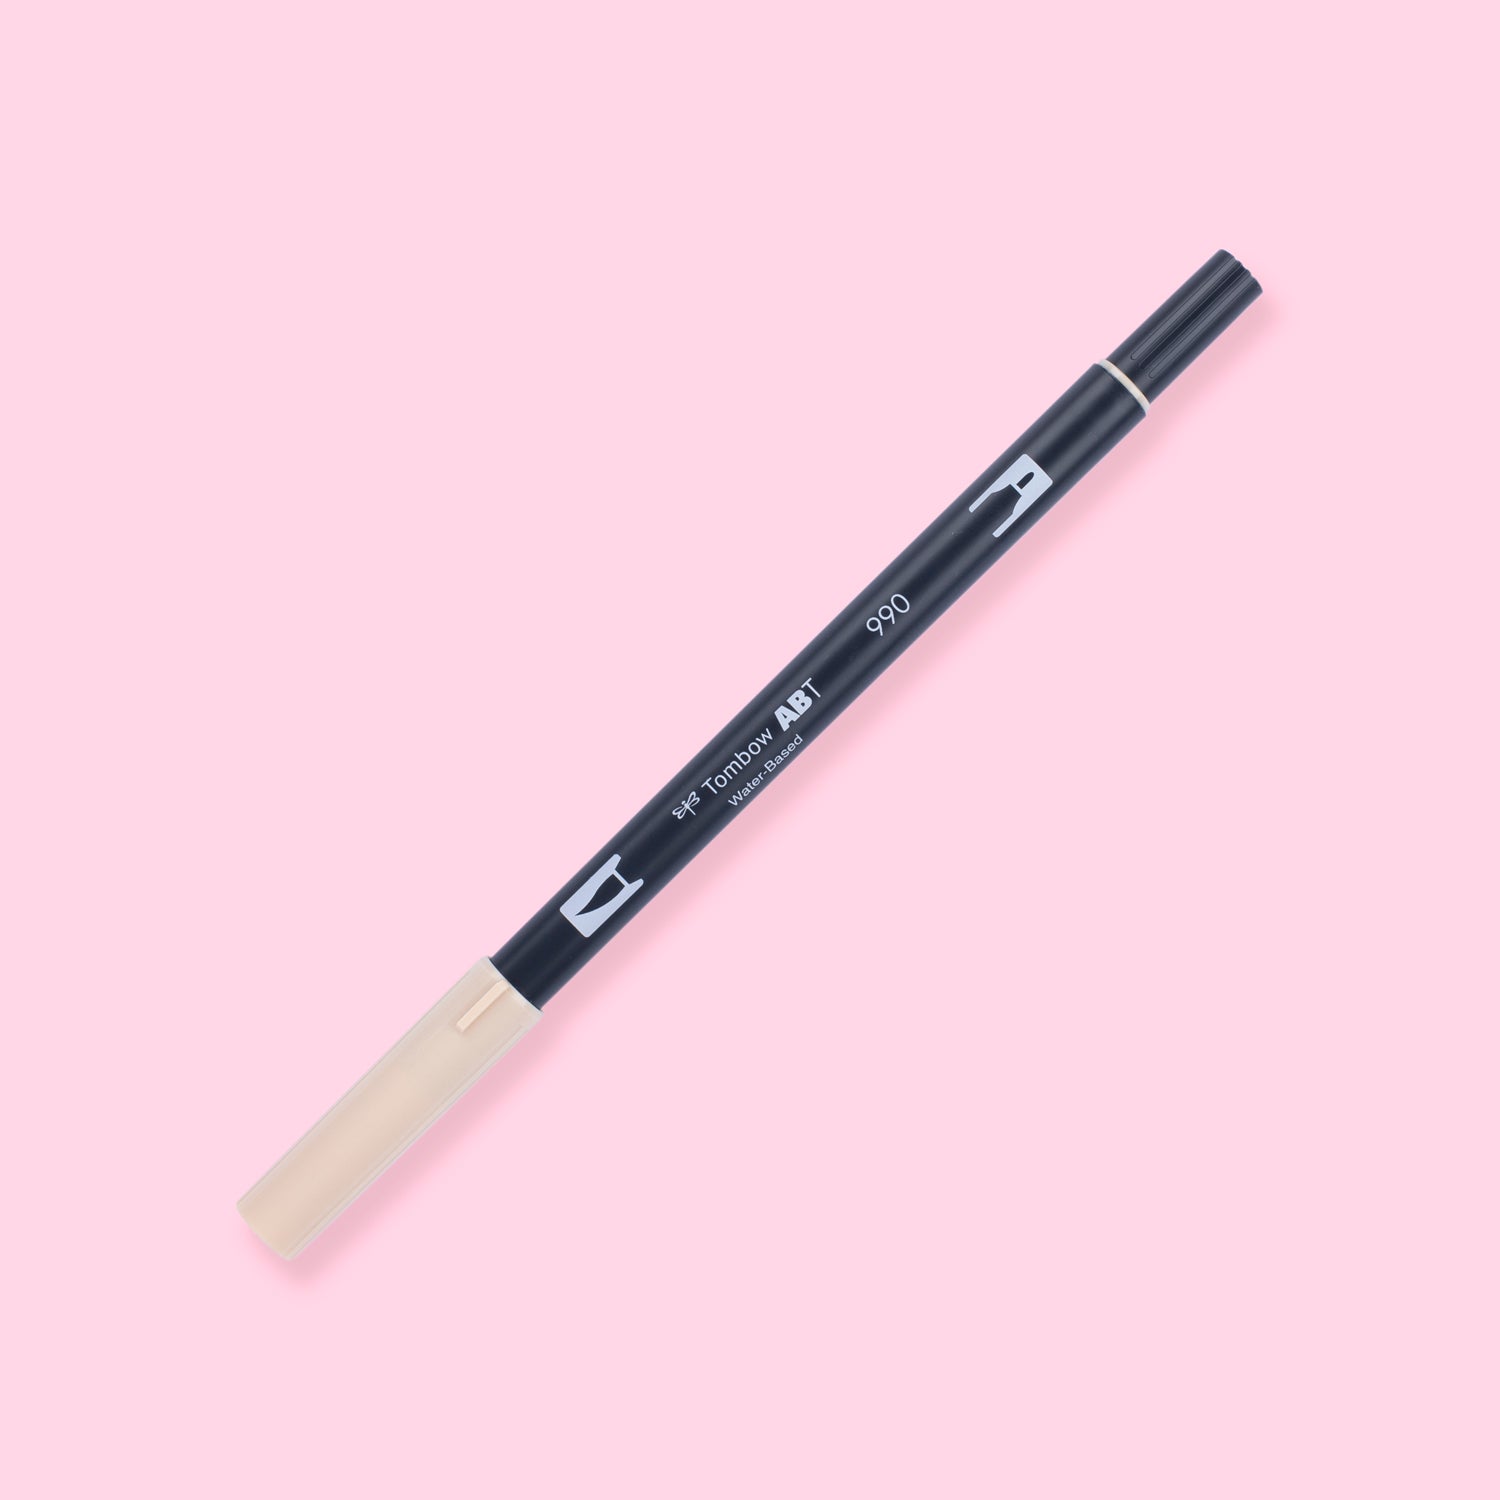 Tombow Dual Brush Pens Bright Palette Fine Tip 10 Pack 1 Bonus Water Based